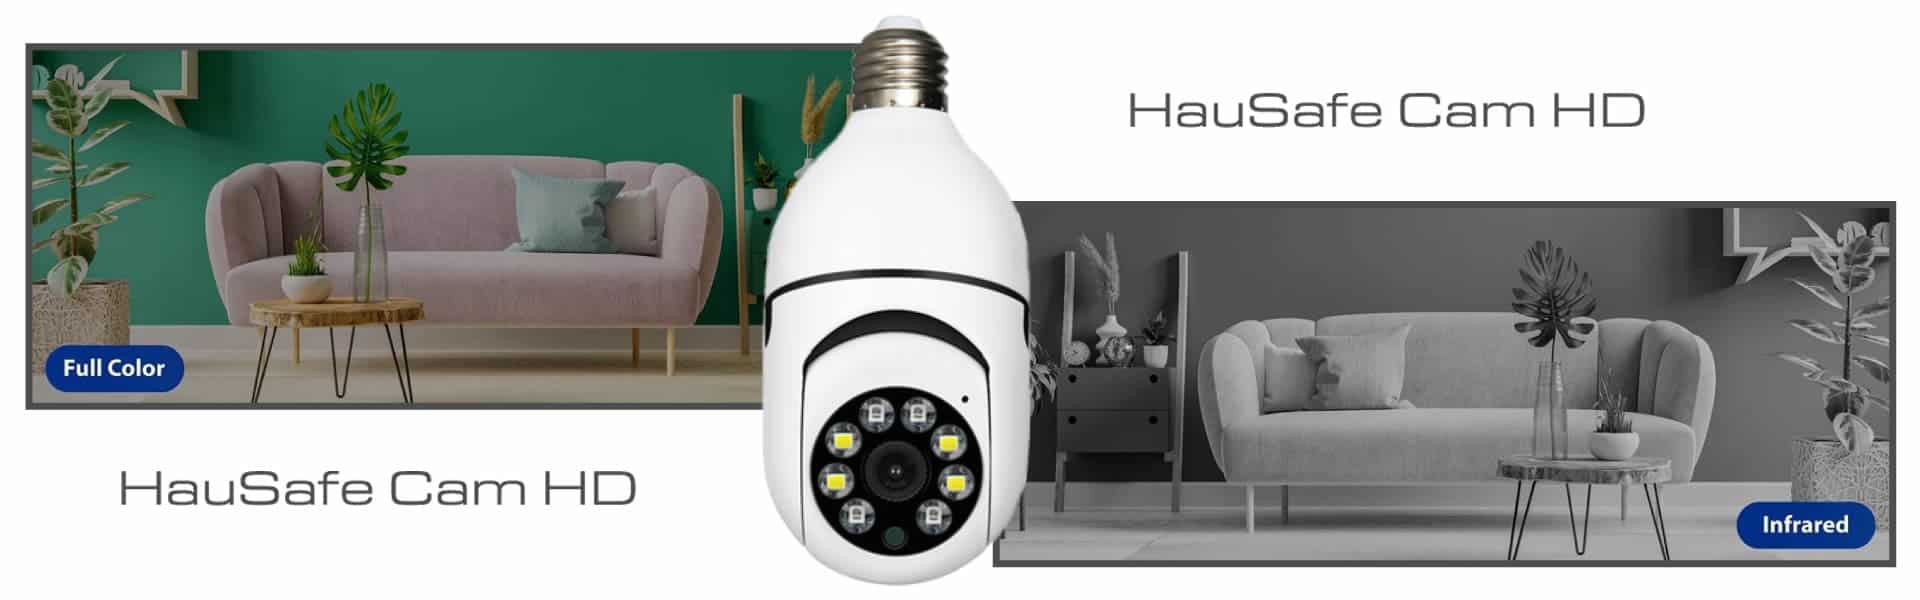 HauSafe Cam HD, Erfahrungen und Meinungen